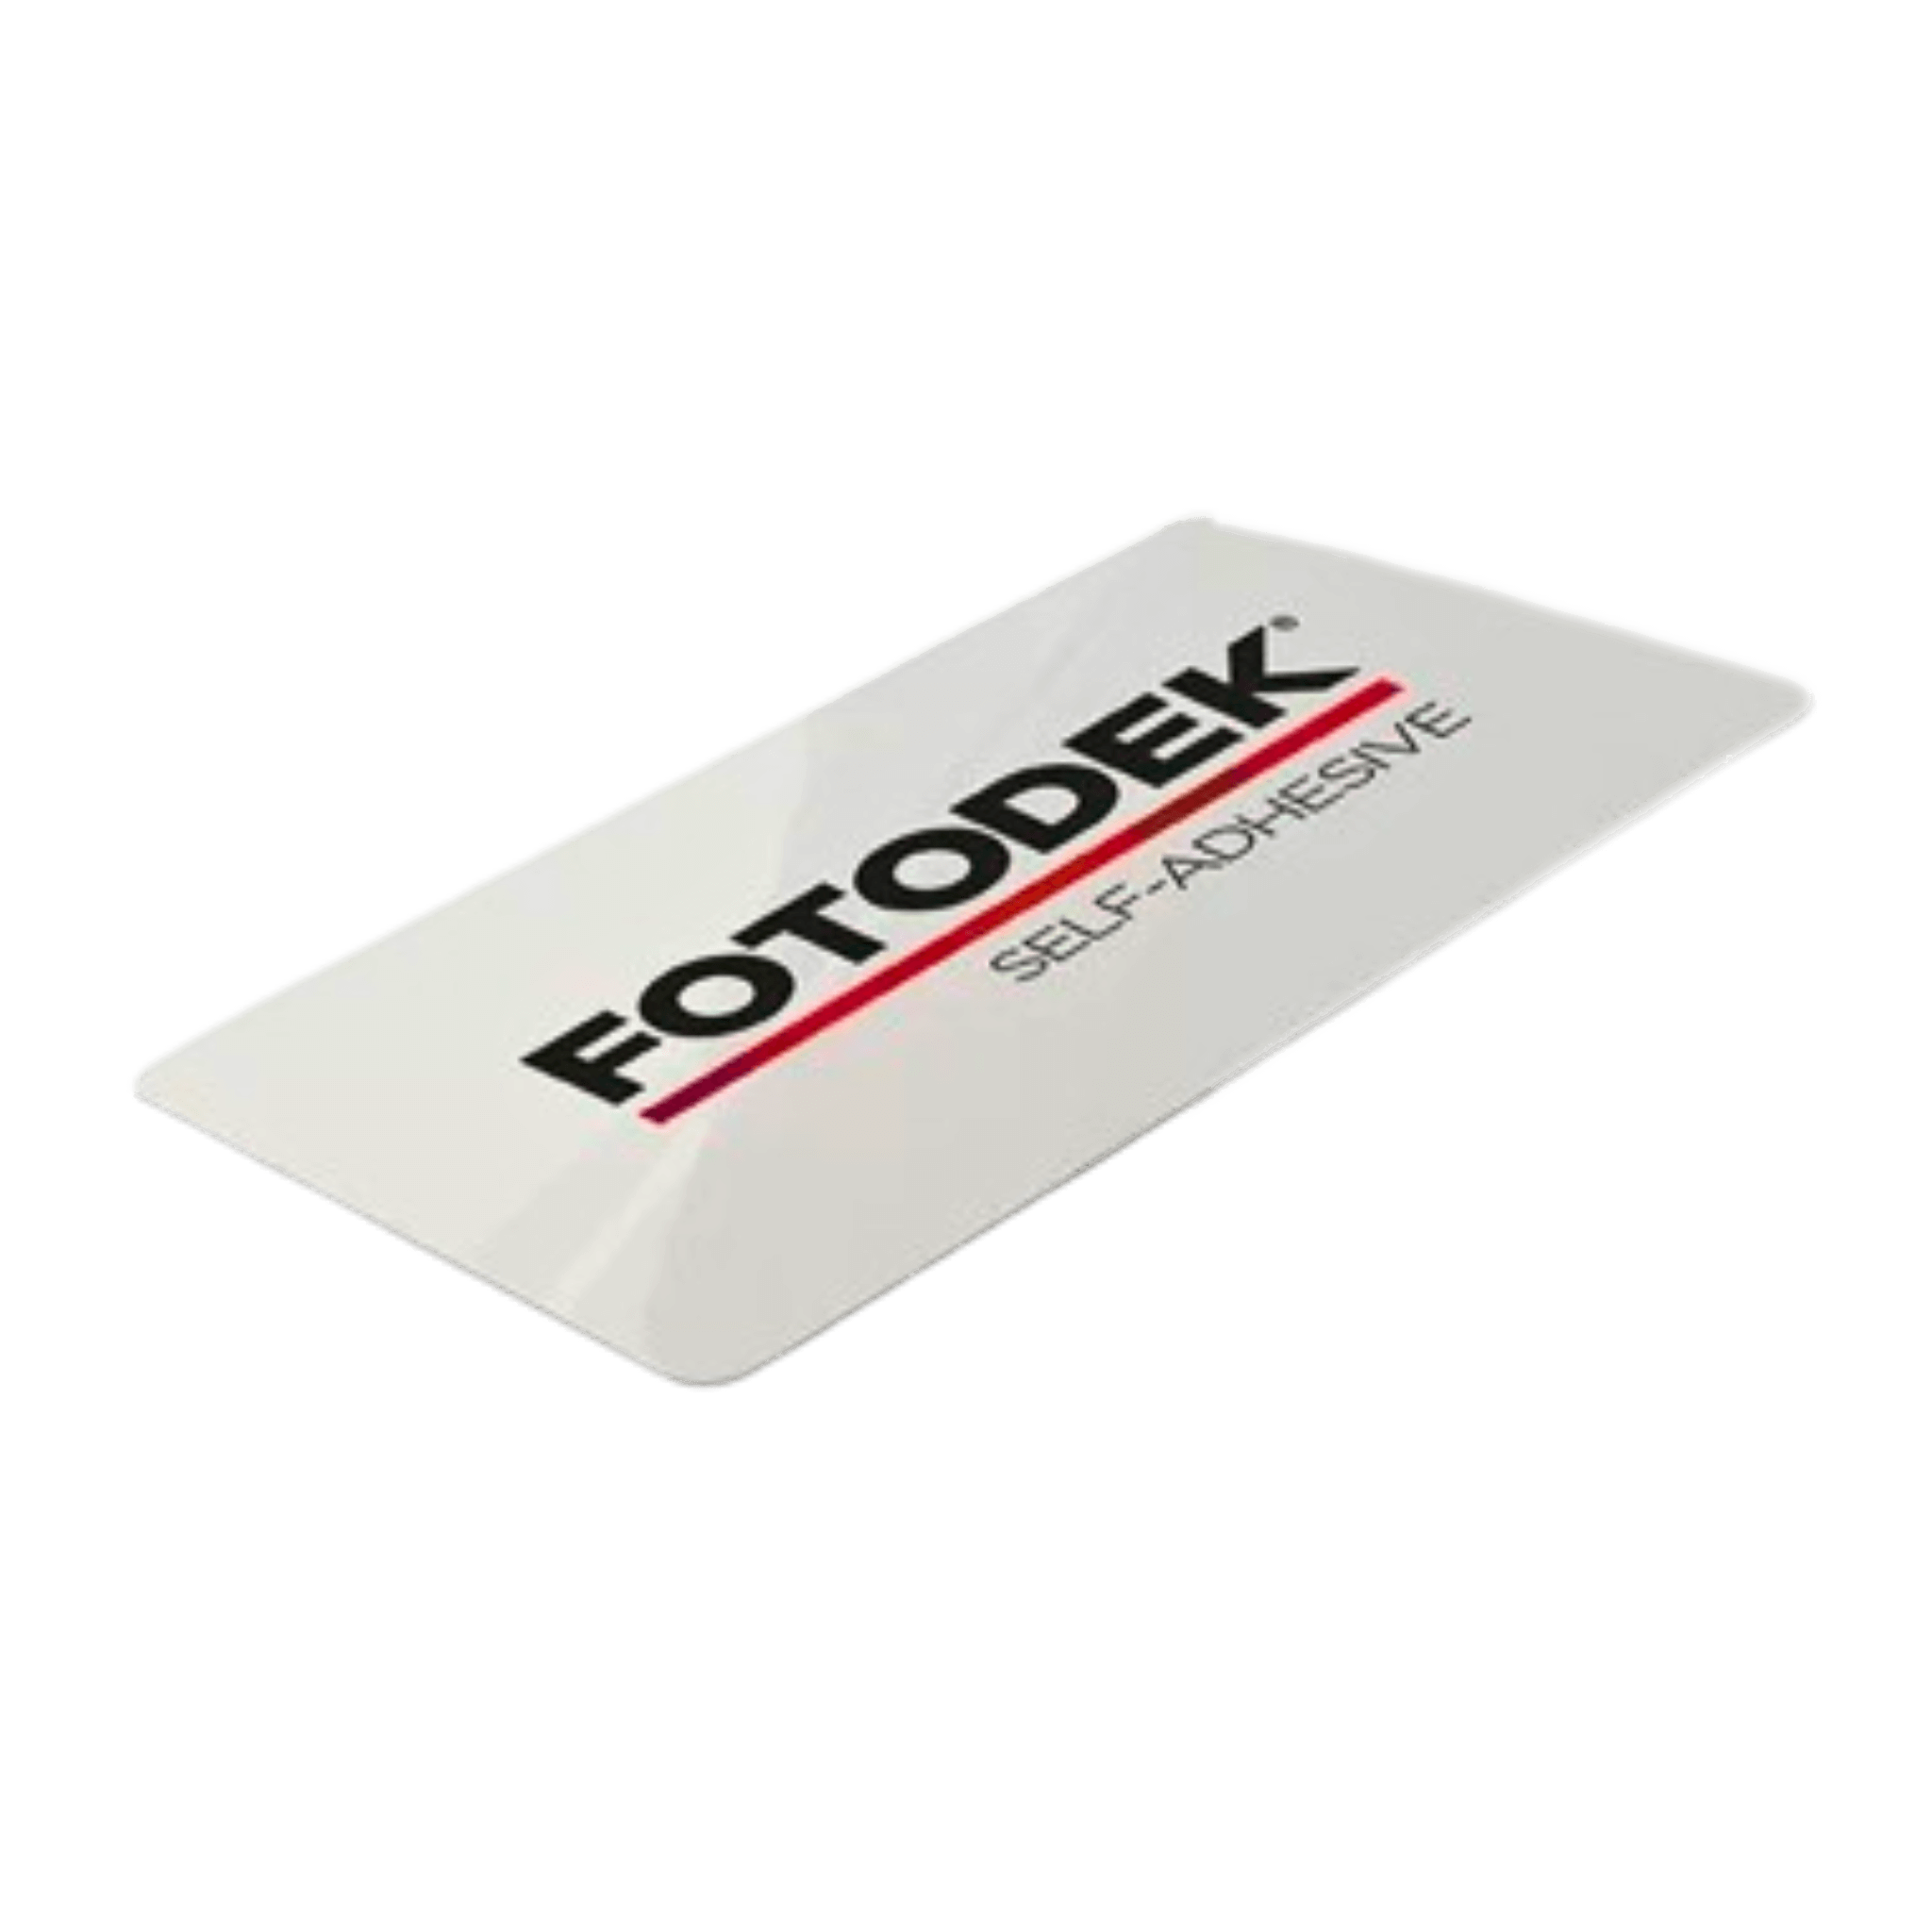 Fotodek® Premium Self Adhesive Cards, 100 Pack